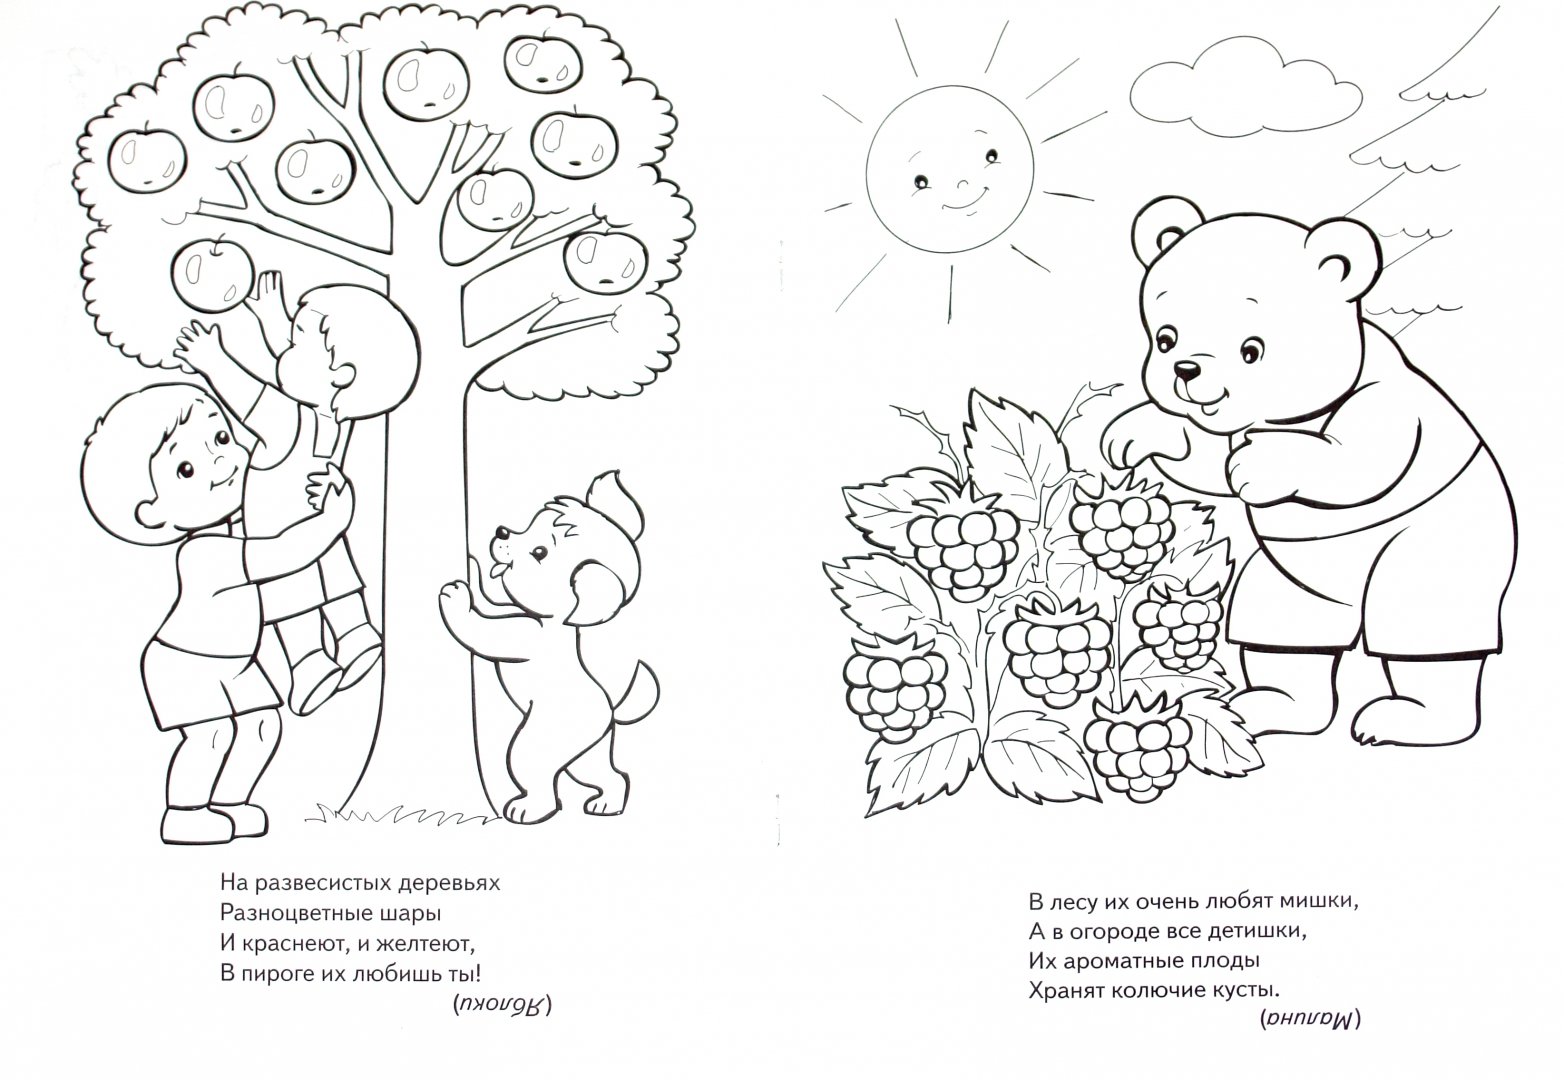 Иллюстрация 1 из 17 для "Во саду ли в огороде..." в стихах. Книжка-раскраска - Анна Баранюк | Лабиринт - книги. Источник: Лабиринт